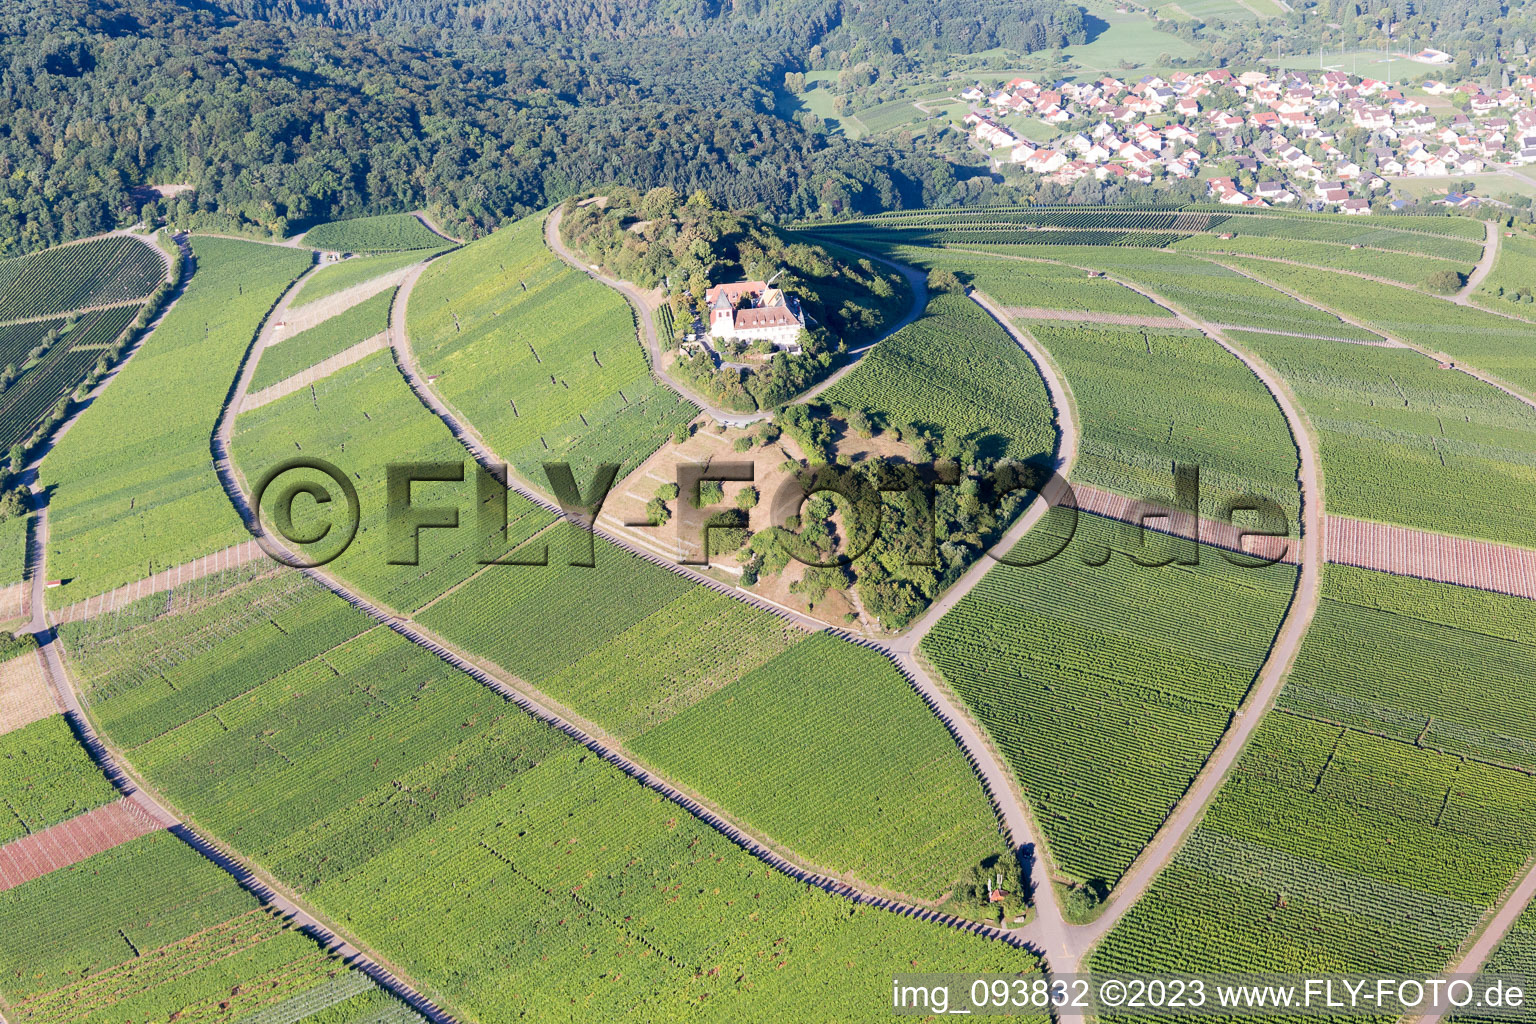 Photographie aérienne de Cleebronn dans le département Bade-Wurtemberg, Allemagne